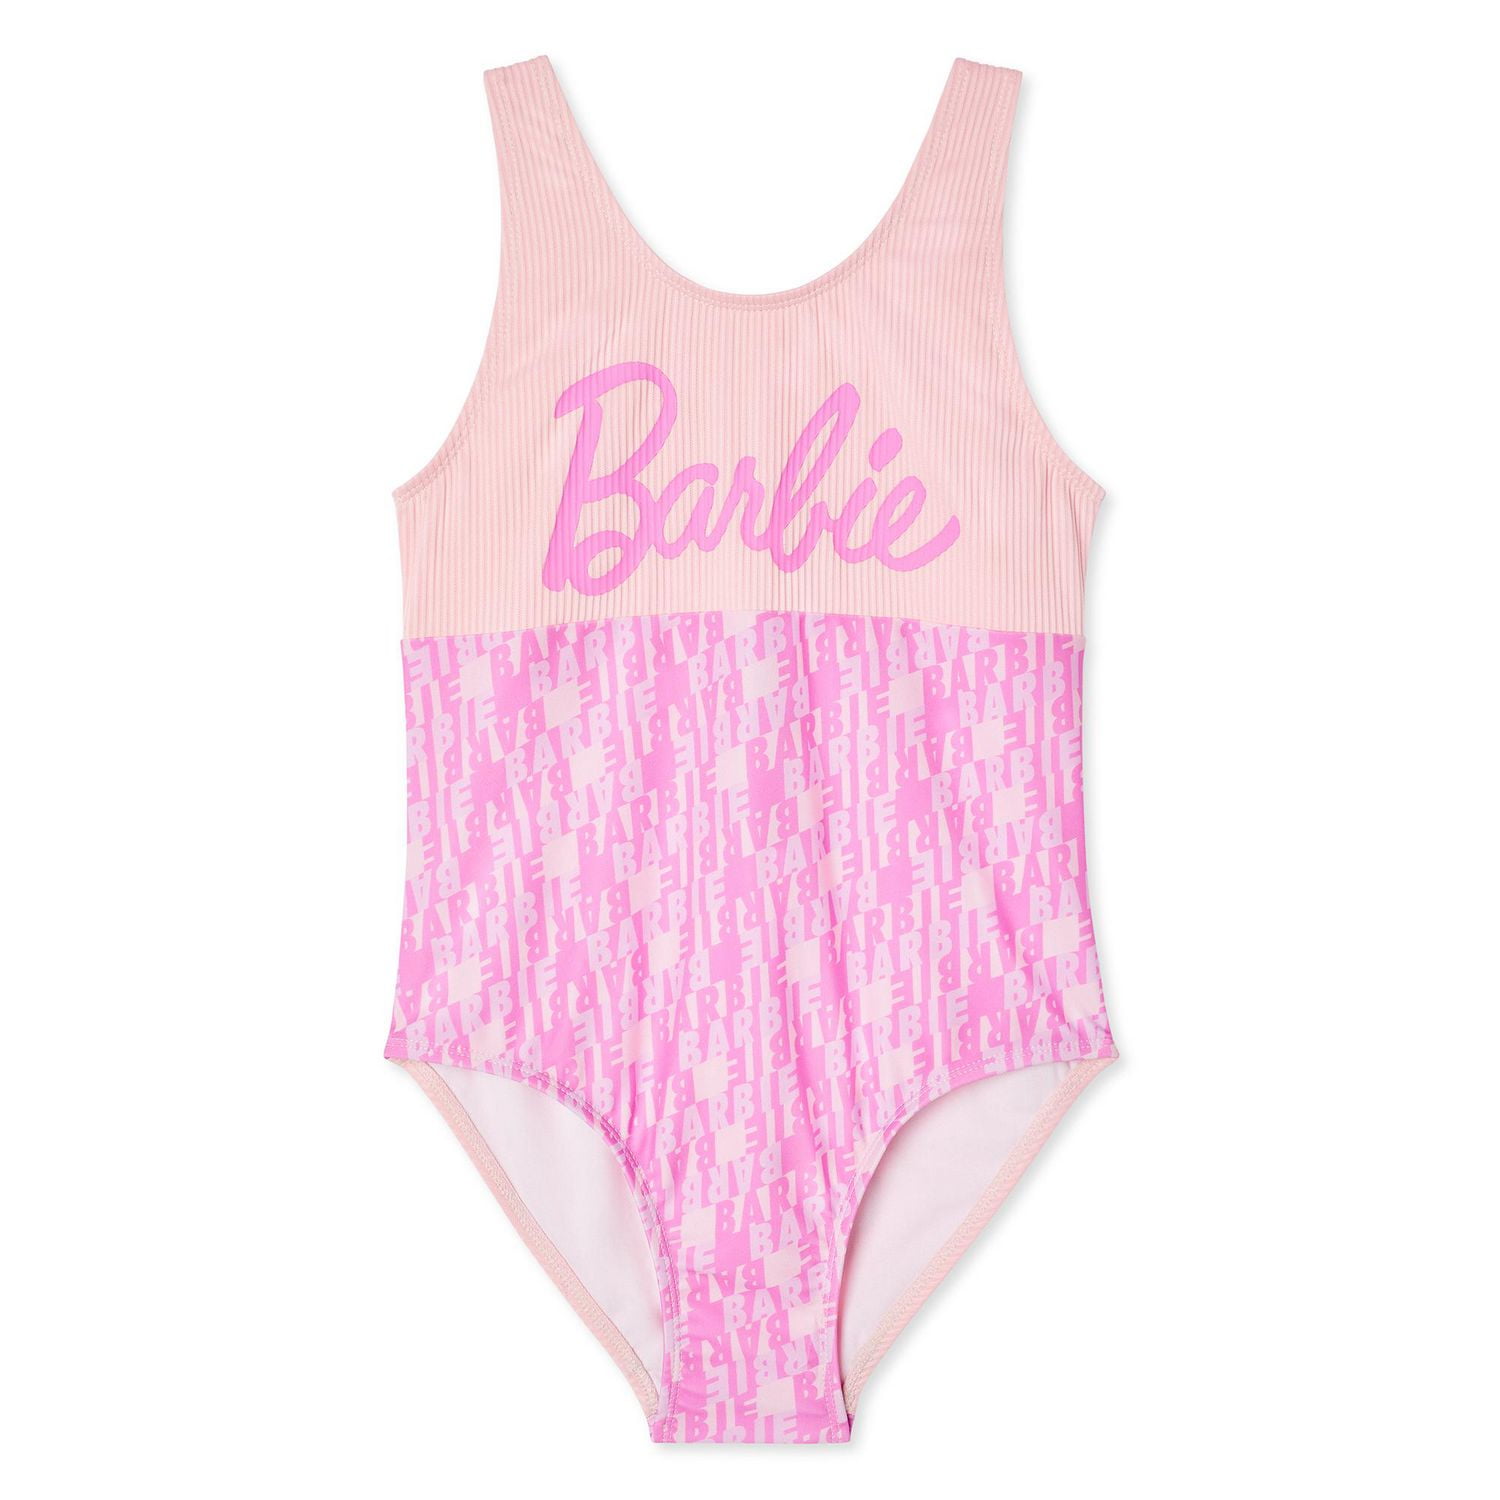 Barbie Little Girls One Piece Bathing Suit Tie Dye Pink 6 : Target